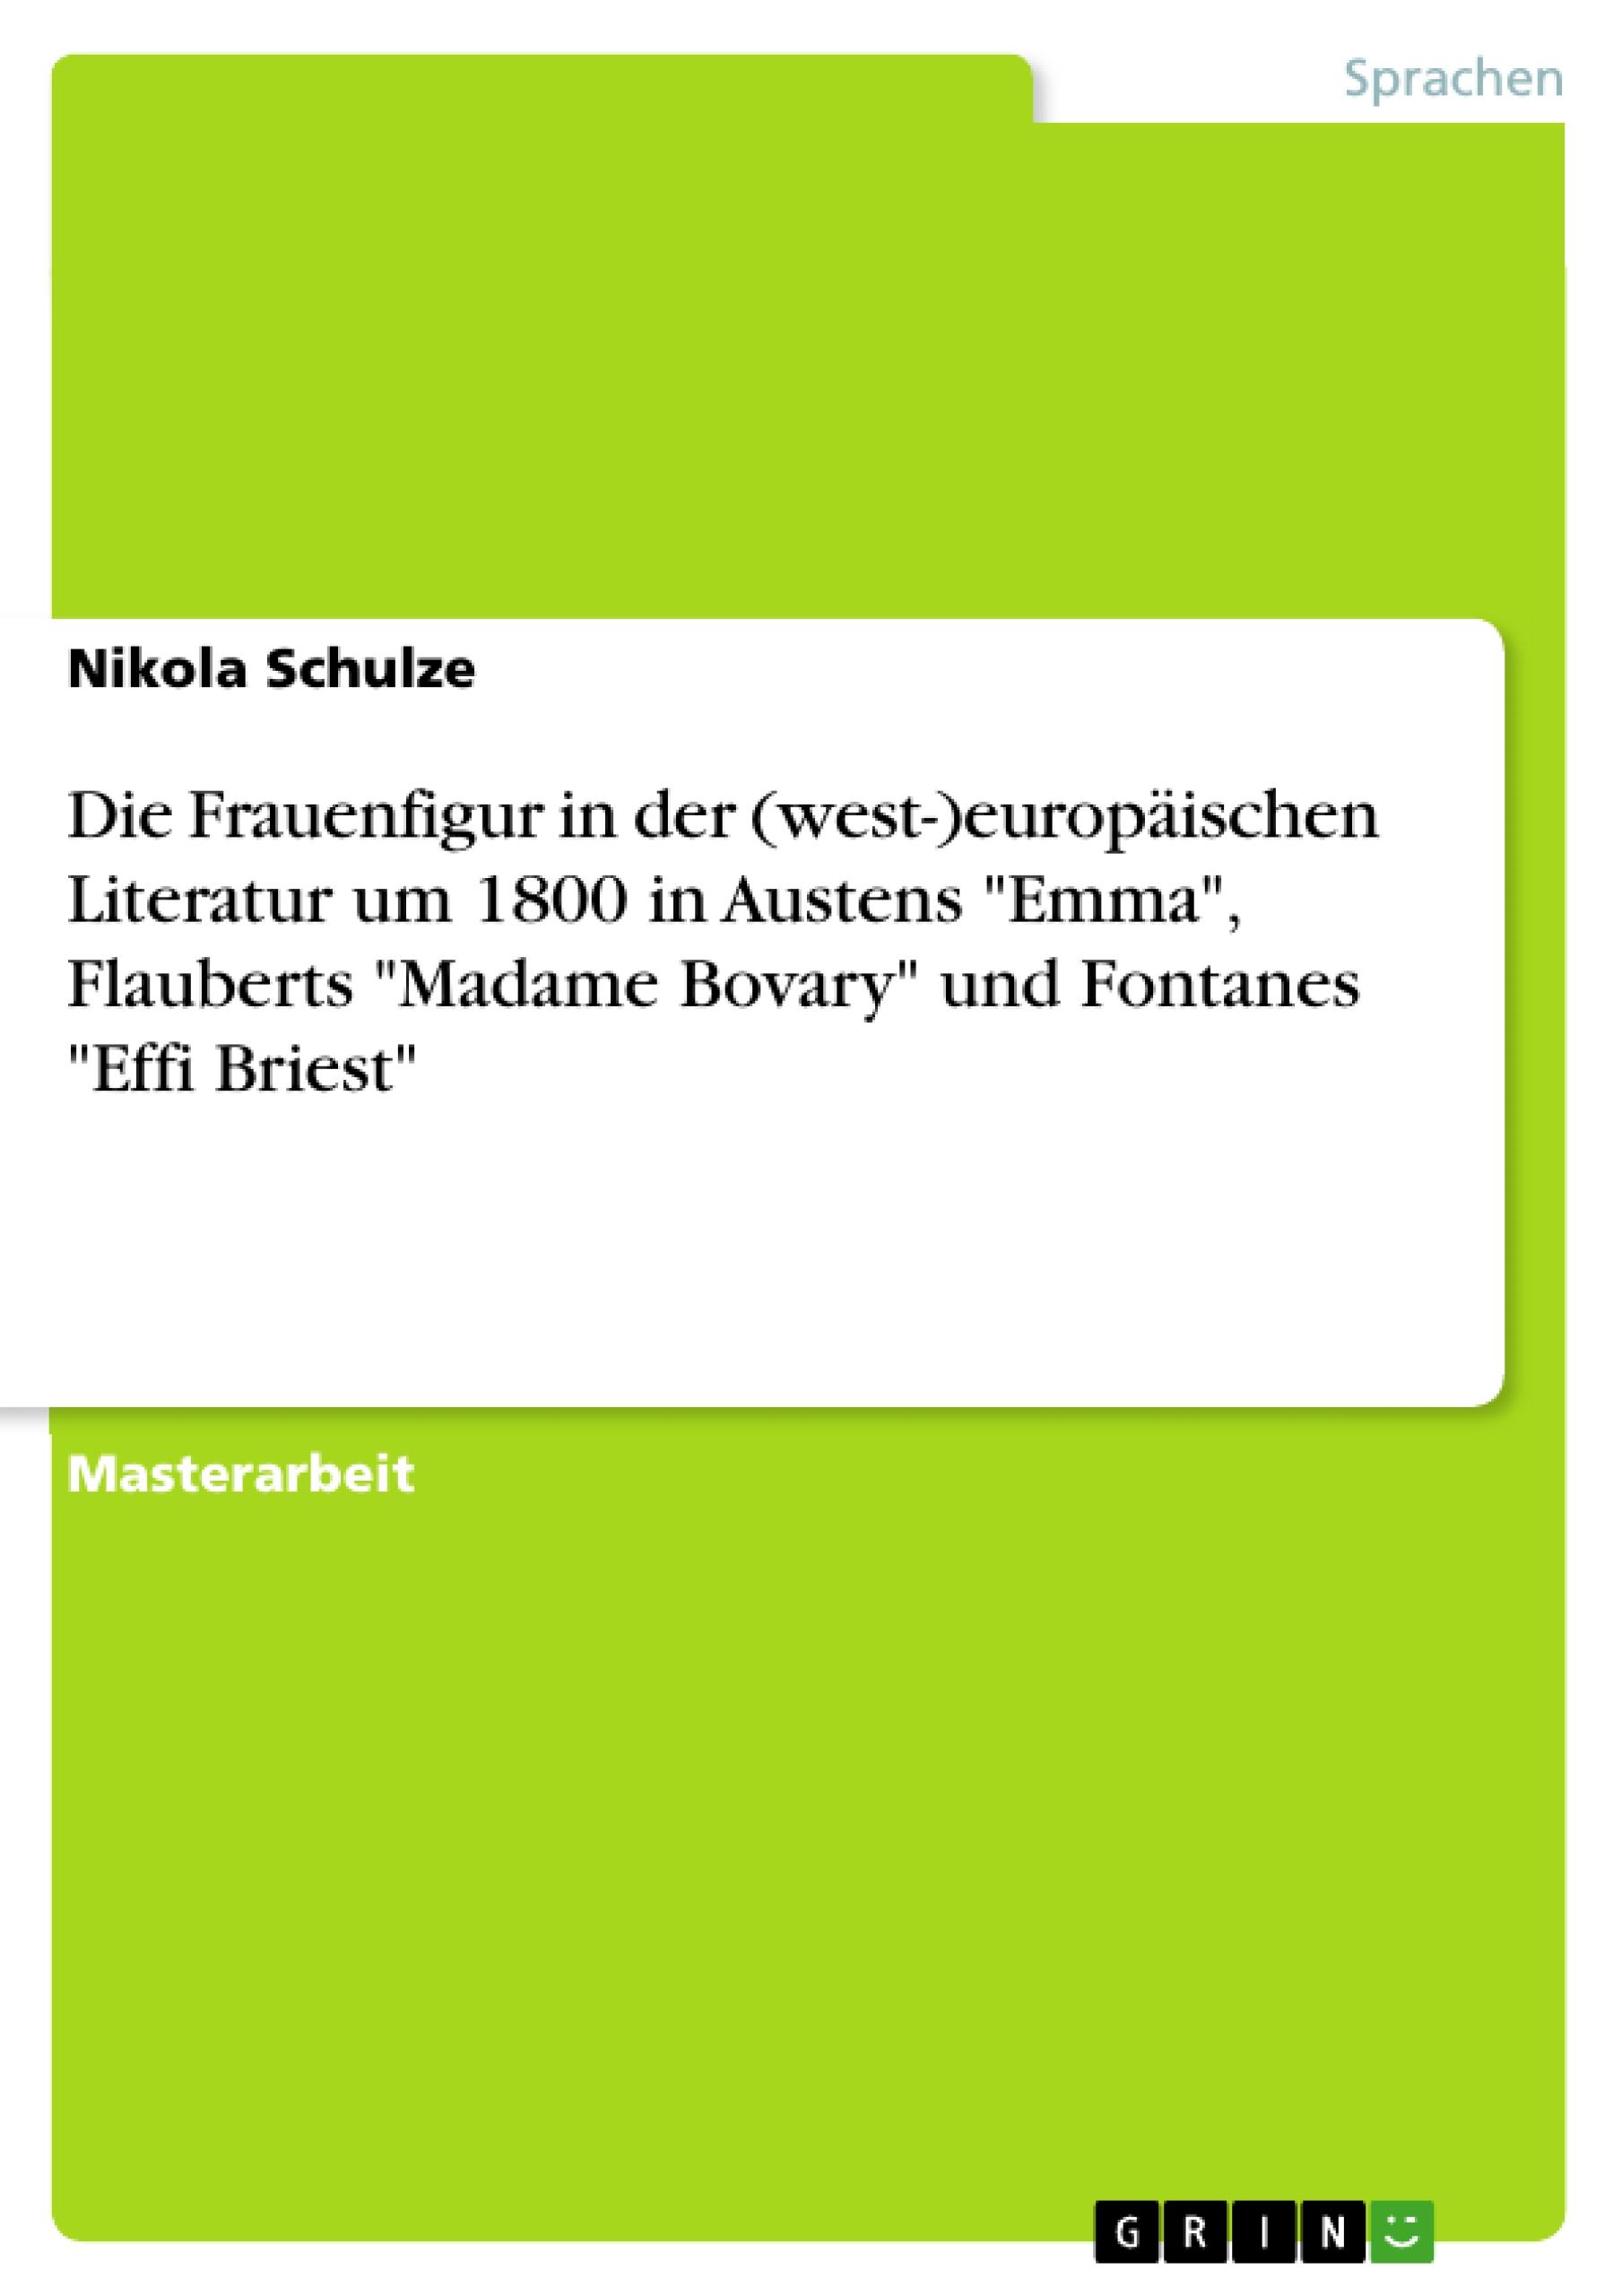 Die Frauenfigur in der (west-)europäischen Literatur um 1800 in Austens 